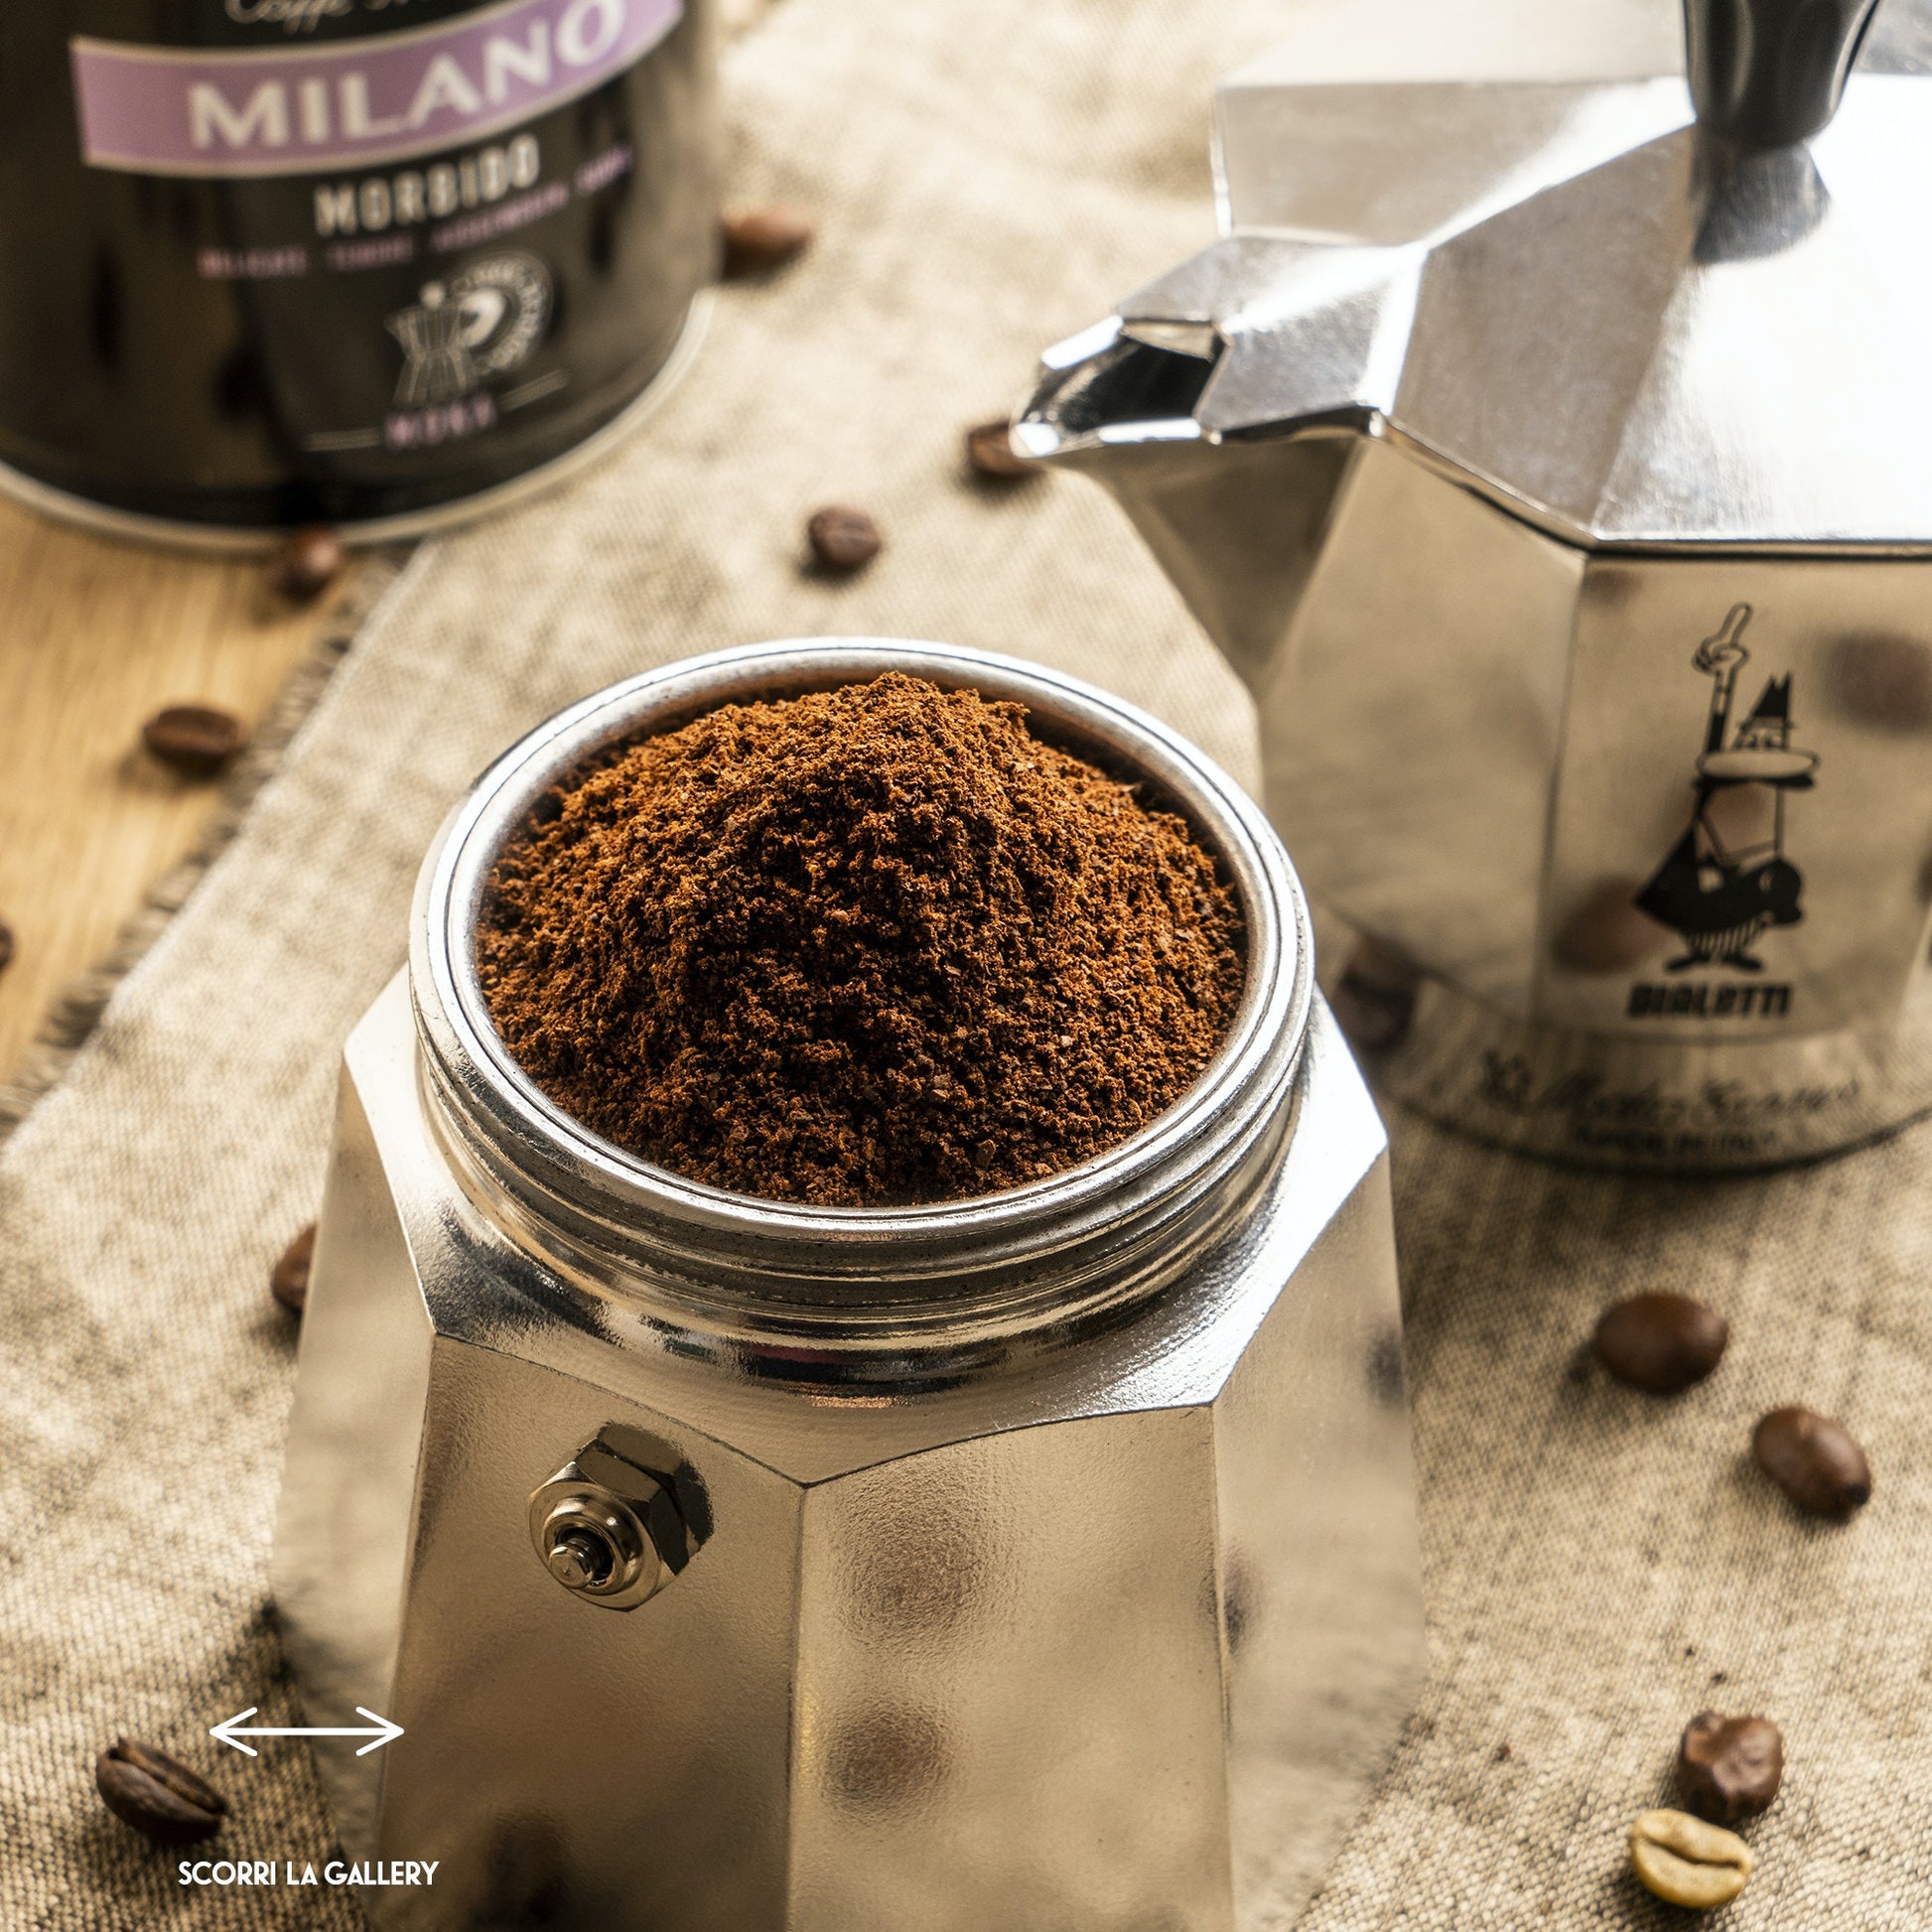 Caffettiera in alluminio da 1 tazza. Con la moka Bialetti, il piacere del caffè diventa un rito quotidiano. Passione e originalità contraddistinguono le caffettiere Bialetti, dove il design contemporaneo e moderno incontra la migliore tradizione.